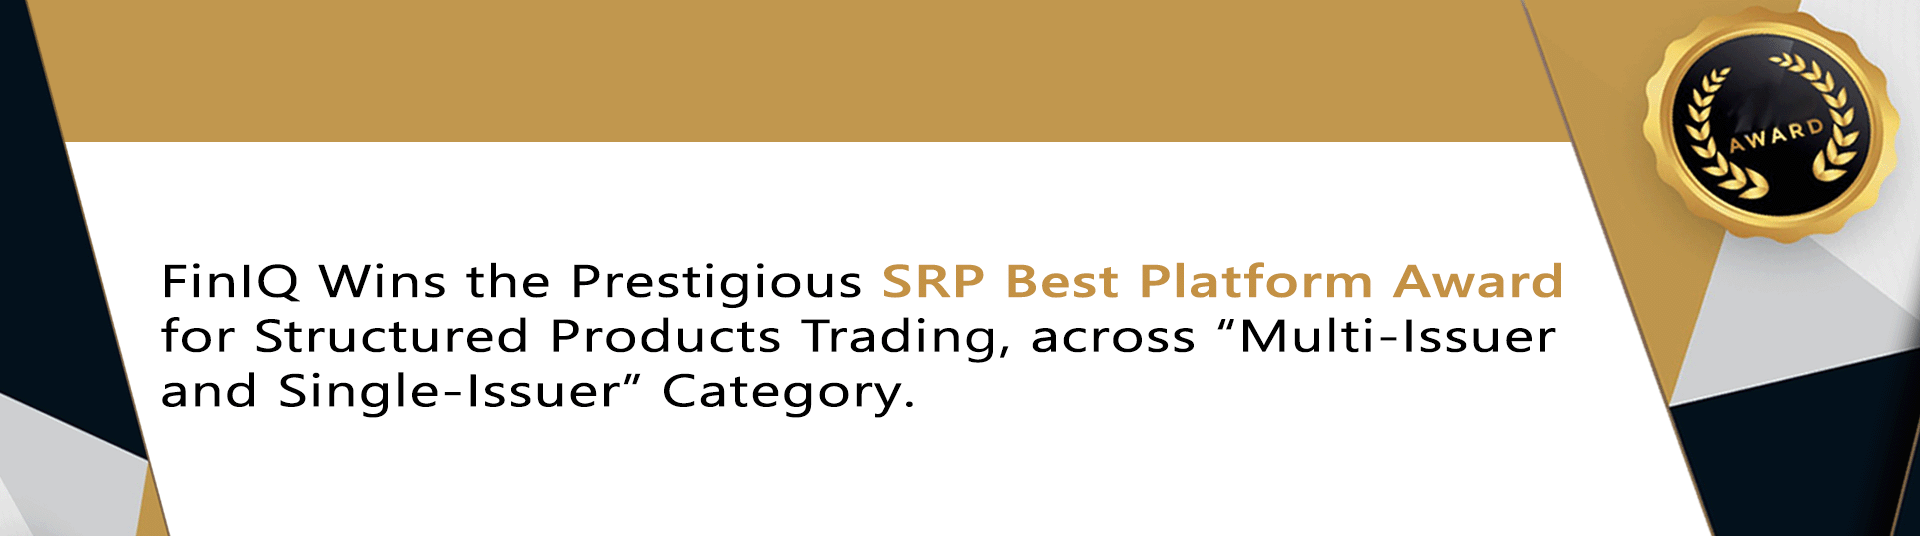 FinIQ Wins the Prestigious SRP Best Platform Award